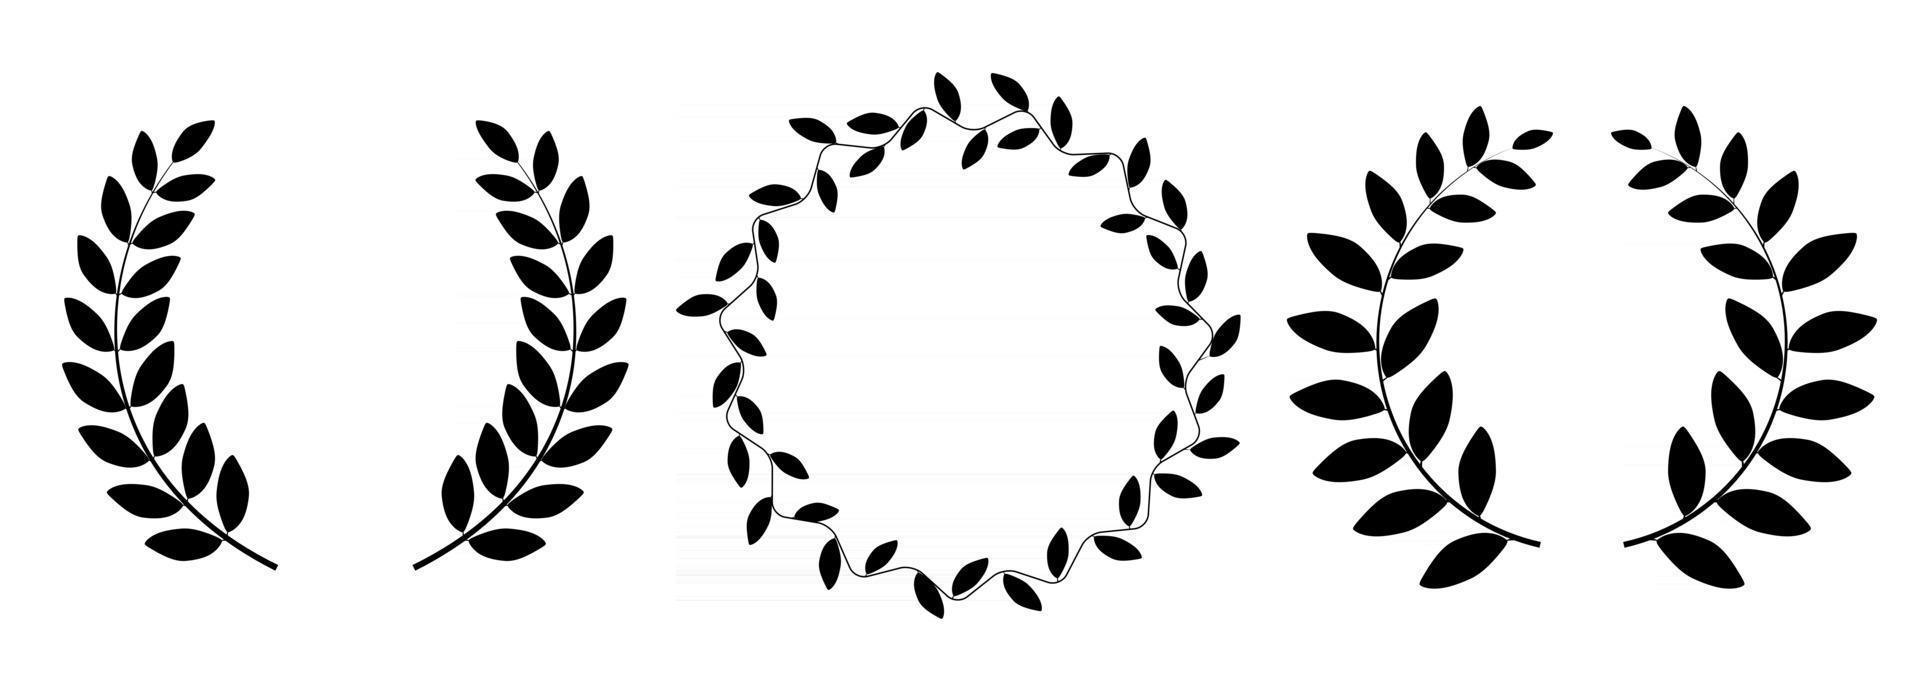 Lorbeerkranz Silhouette Sammlungssatz isoliert auf weißem Hintergrund. Vektor-Illustration vektor